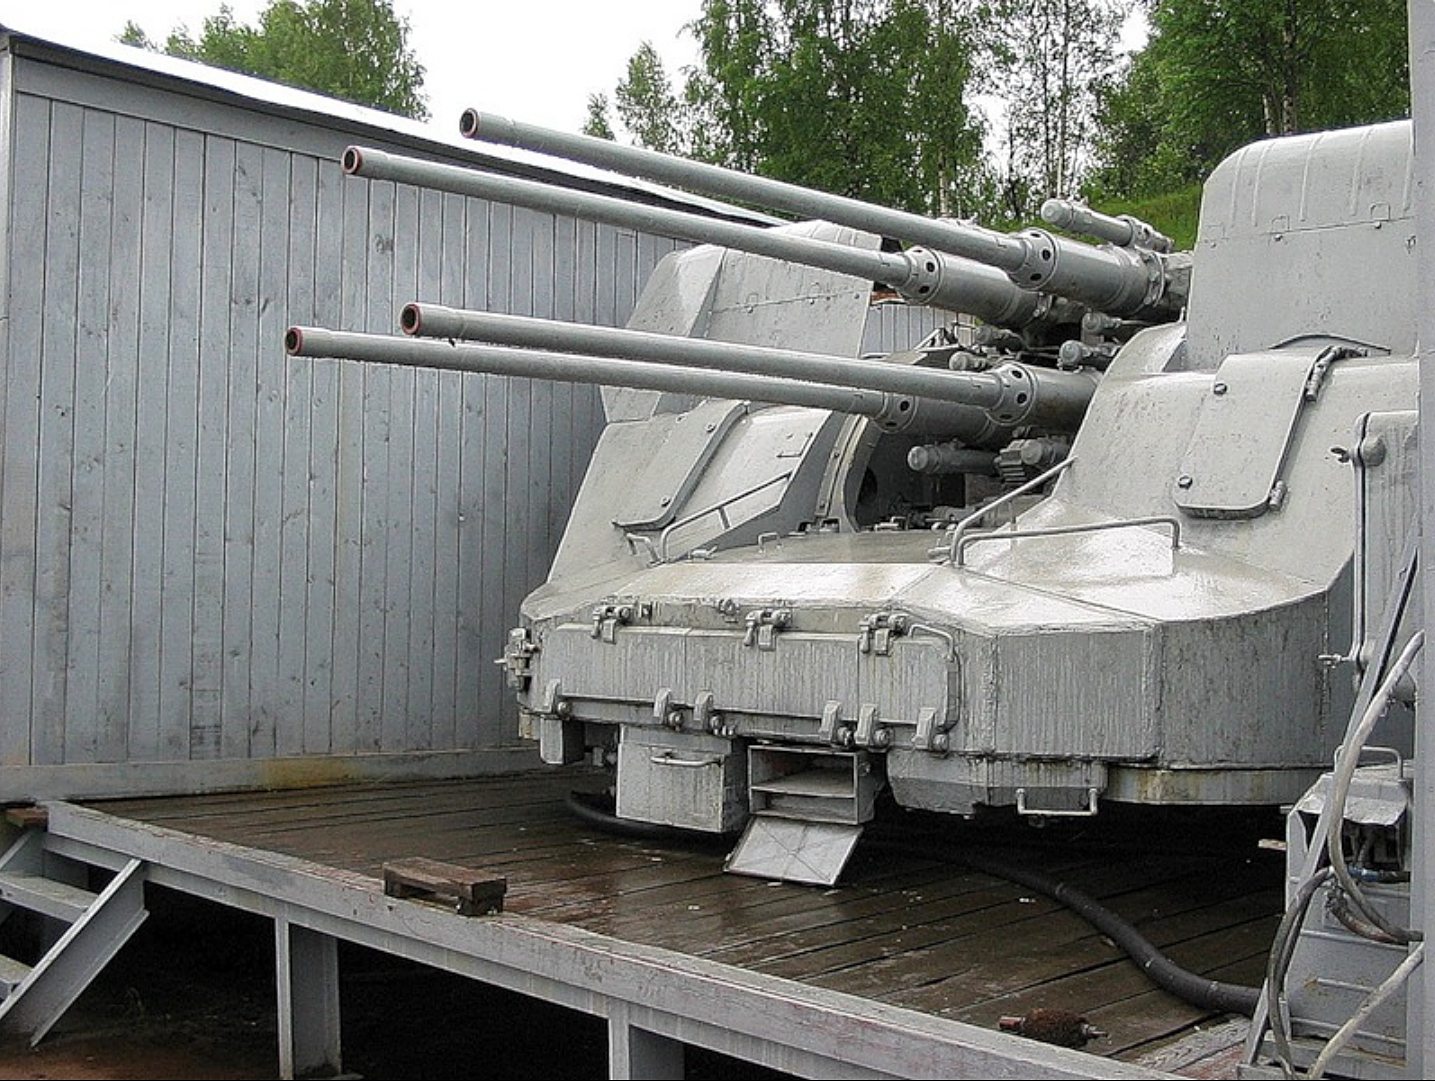 四联装57毫米zif-75高平两用舰炮,和上面的45毫米sm-20-zif是不是很像